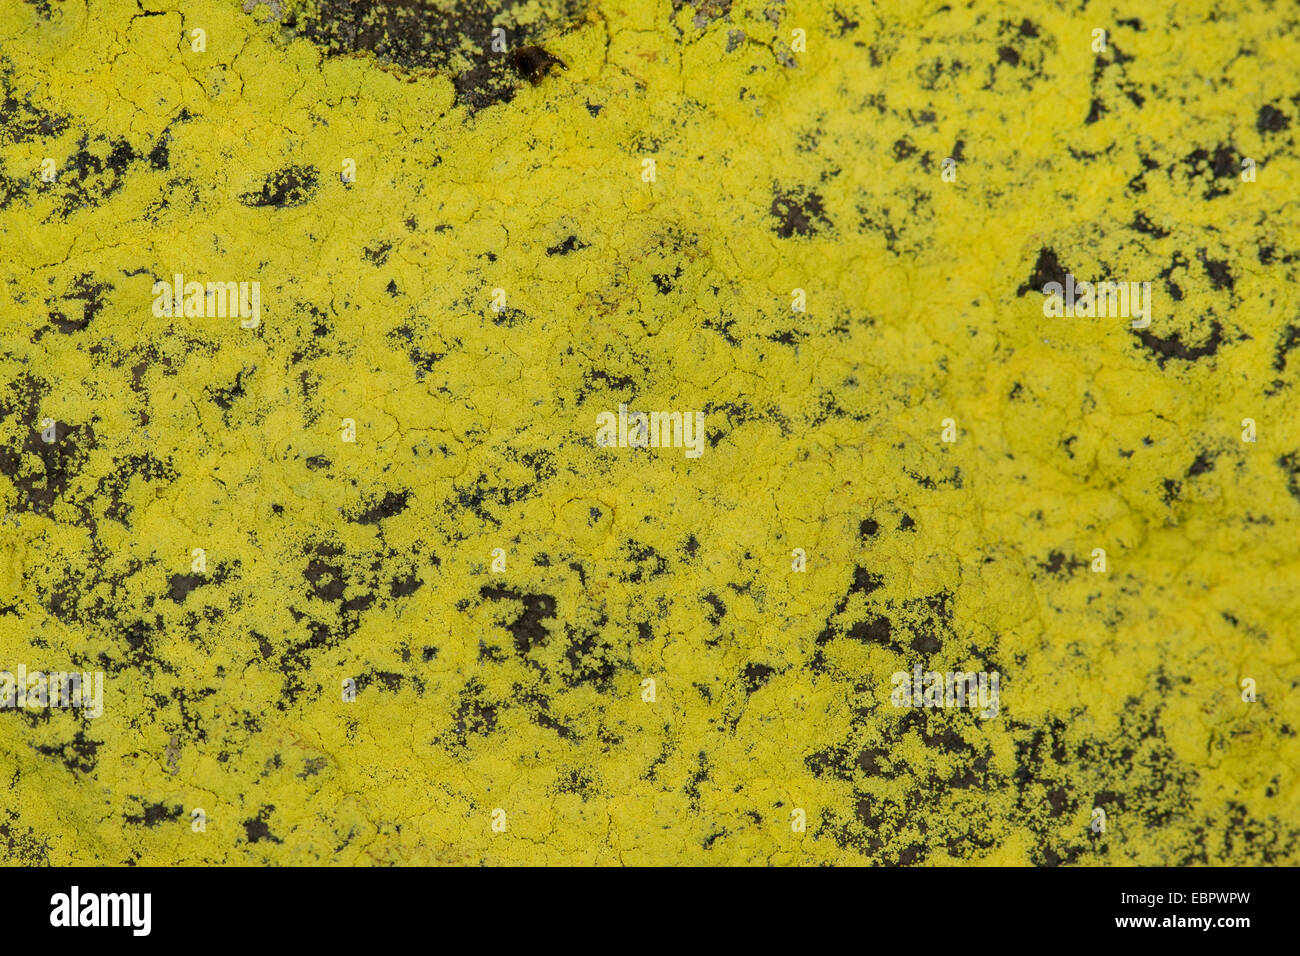 La poussière de soufre (Chrysothrix chlorina lichen, Lepraria chlorina), sur un rocher, Allemagne Banque D'Images